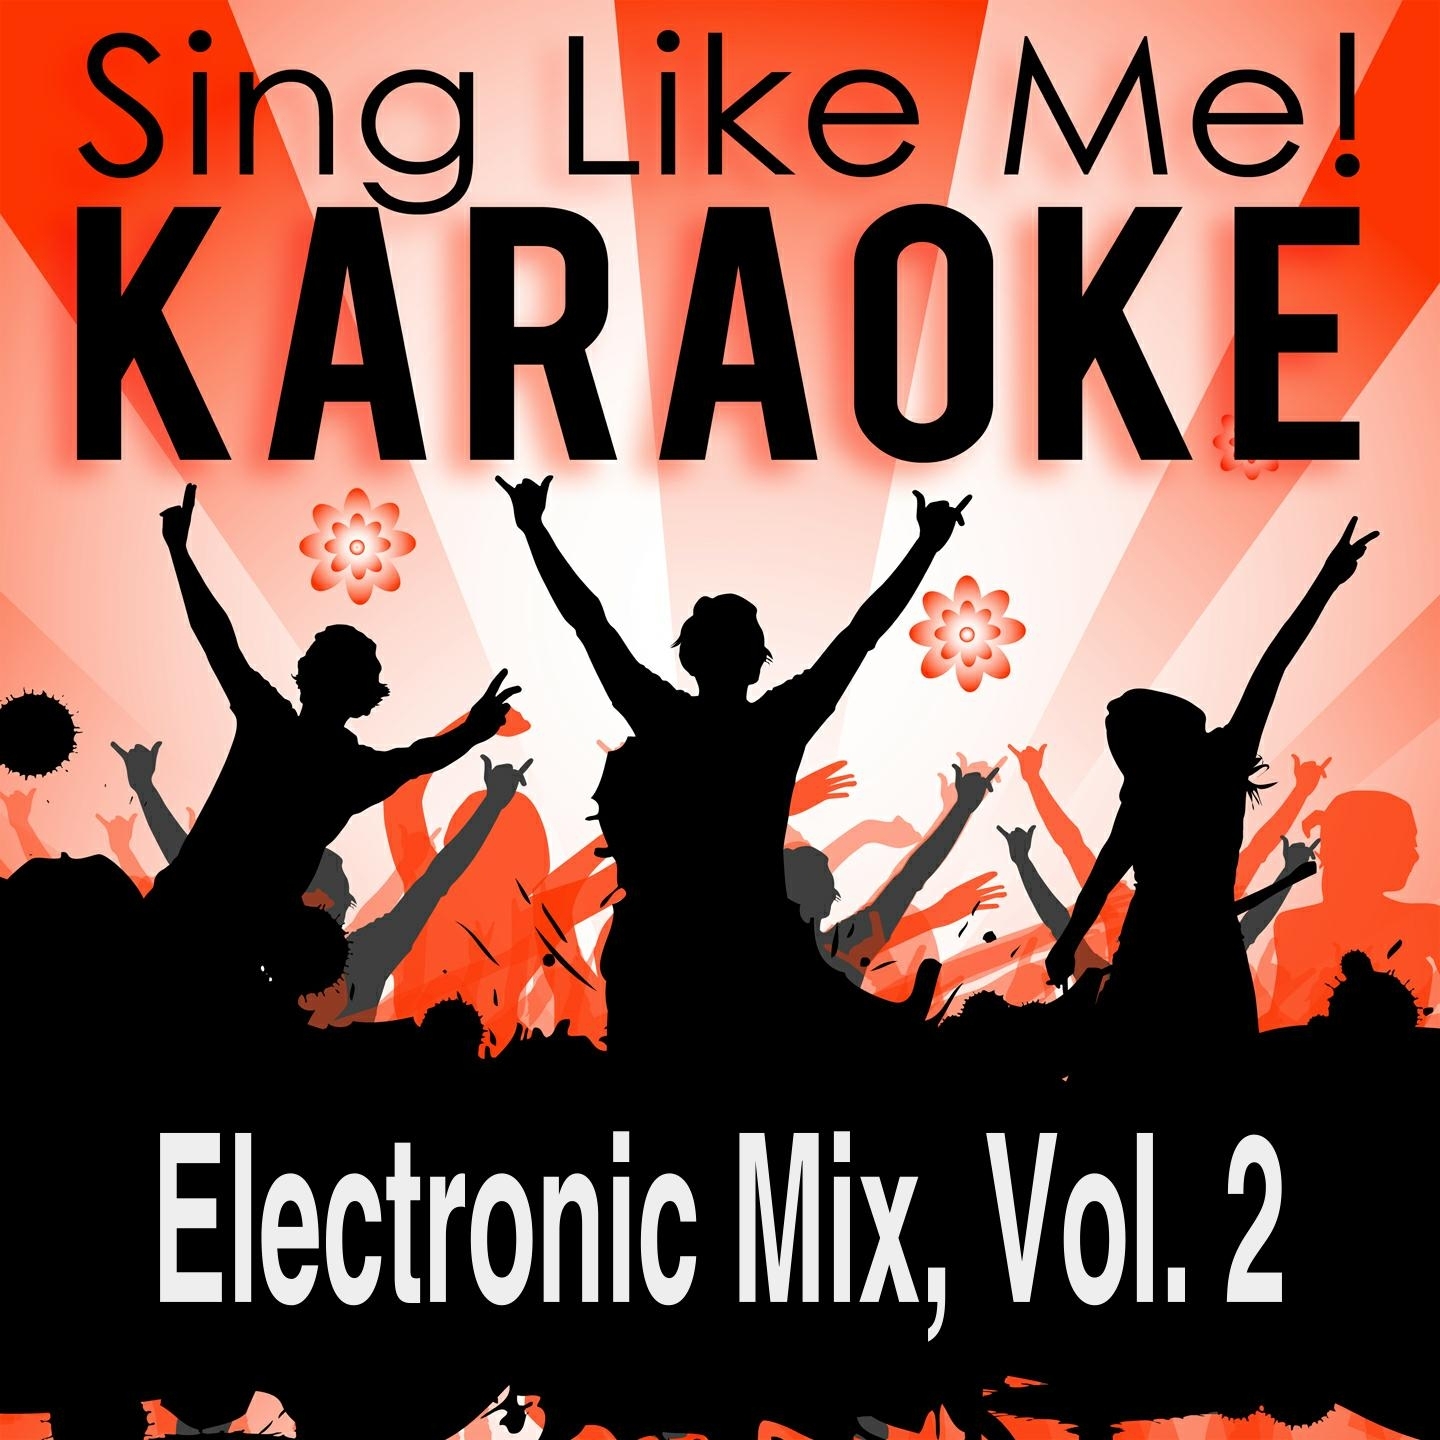 Electronic Mix, Vol. 2 (Karaoke Version)